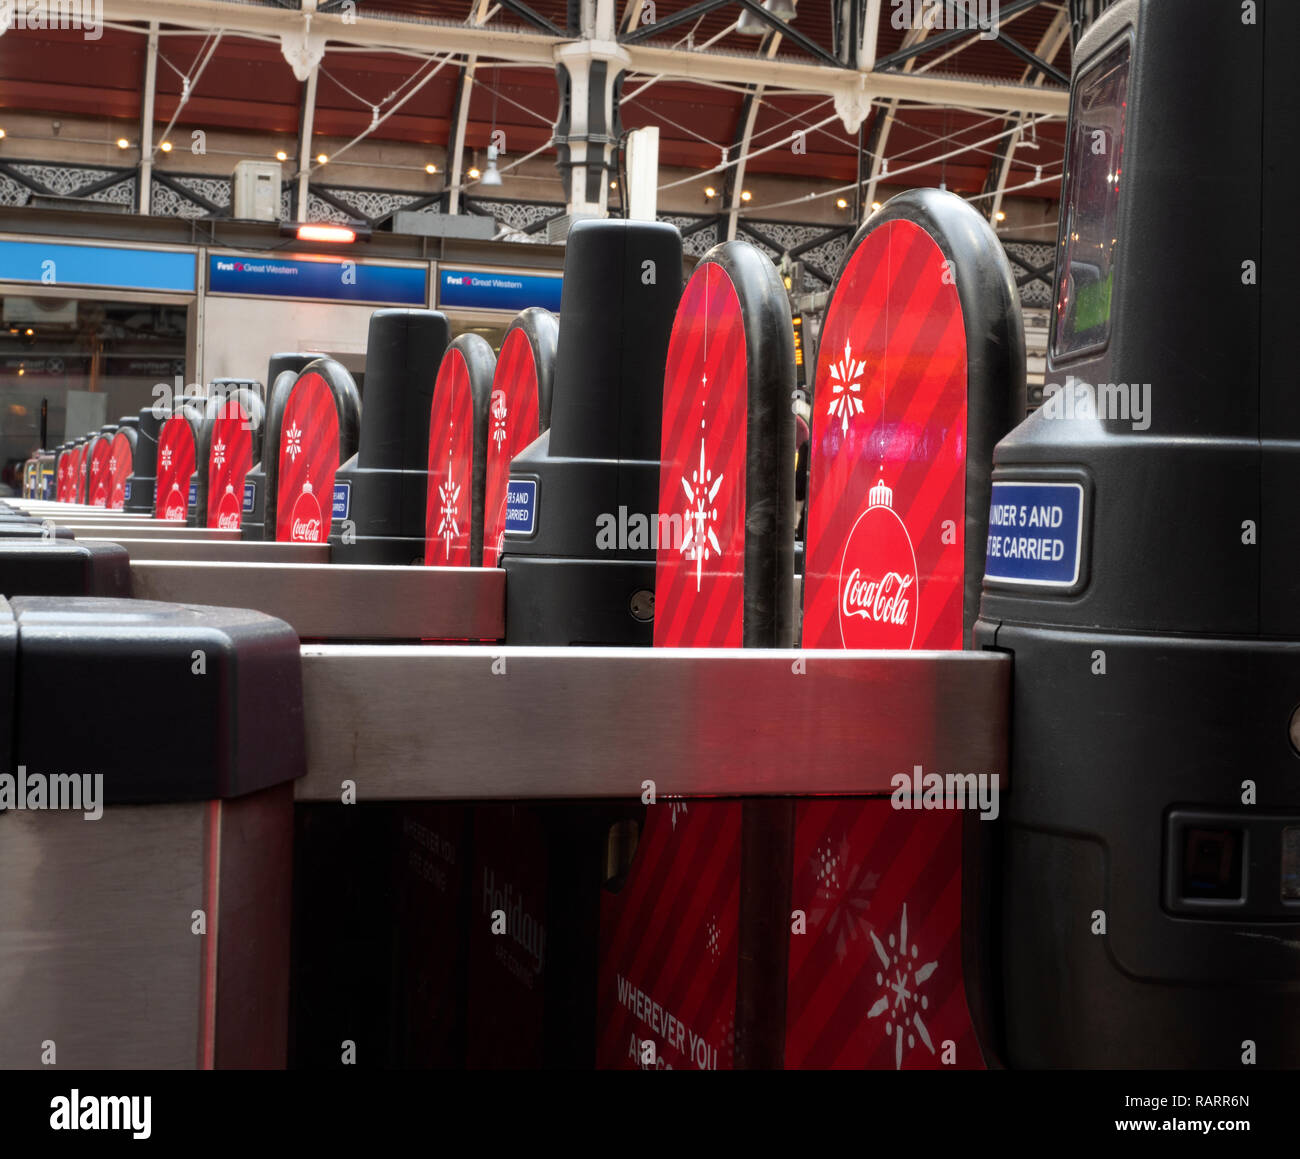 Billet automatisé, les barrières de la gare de Paddington, Londres, Angleterre, Royaume-Uni. Banque D'Images